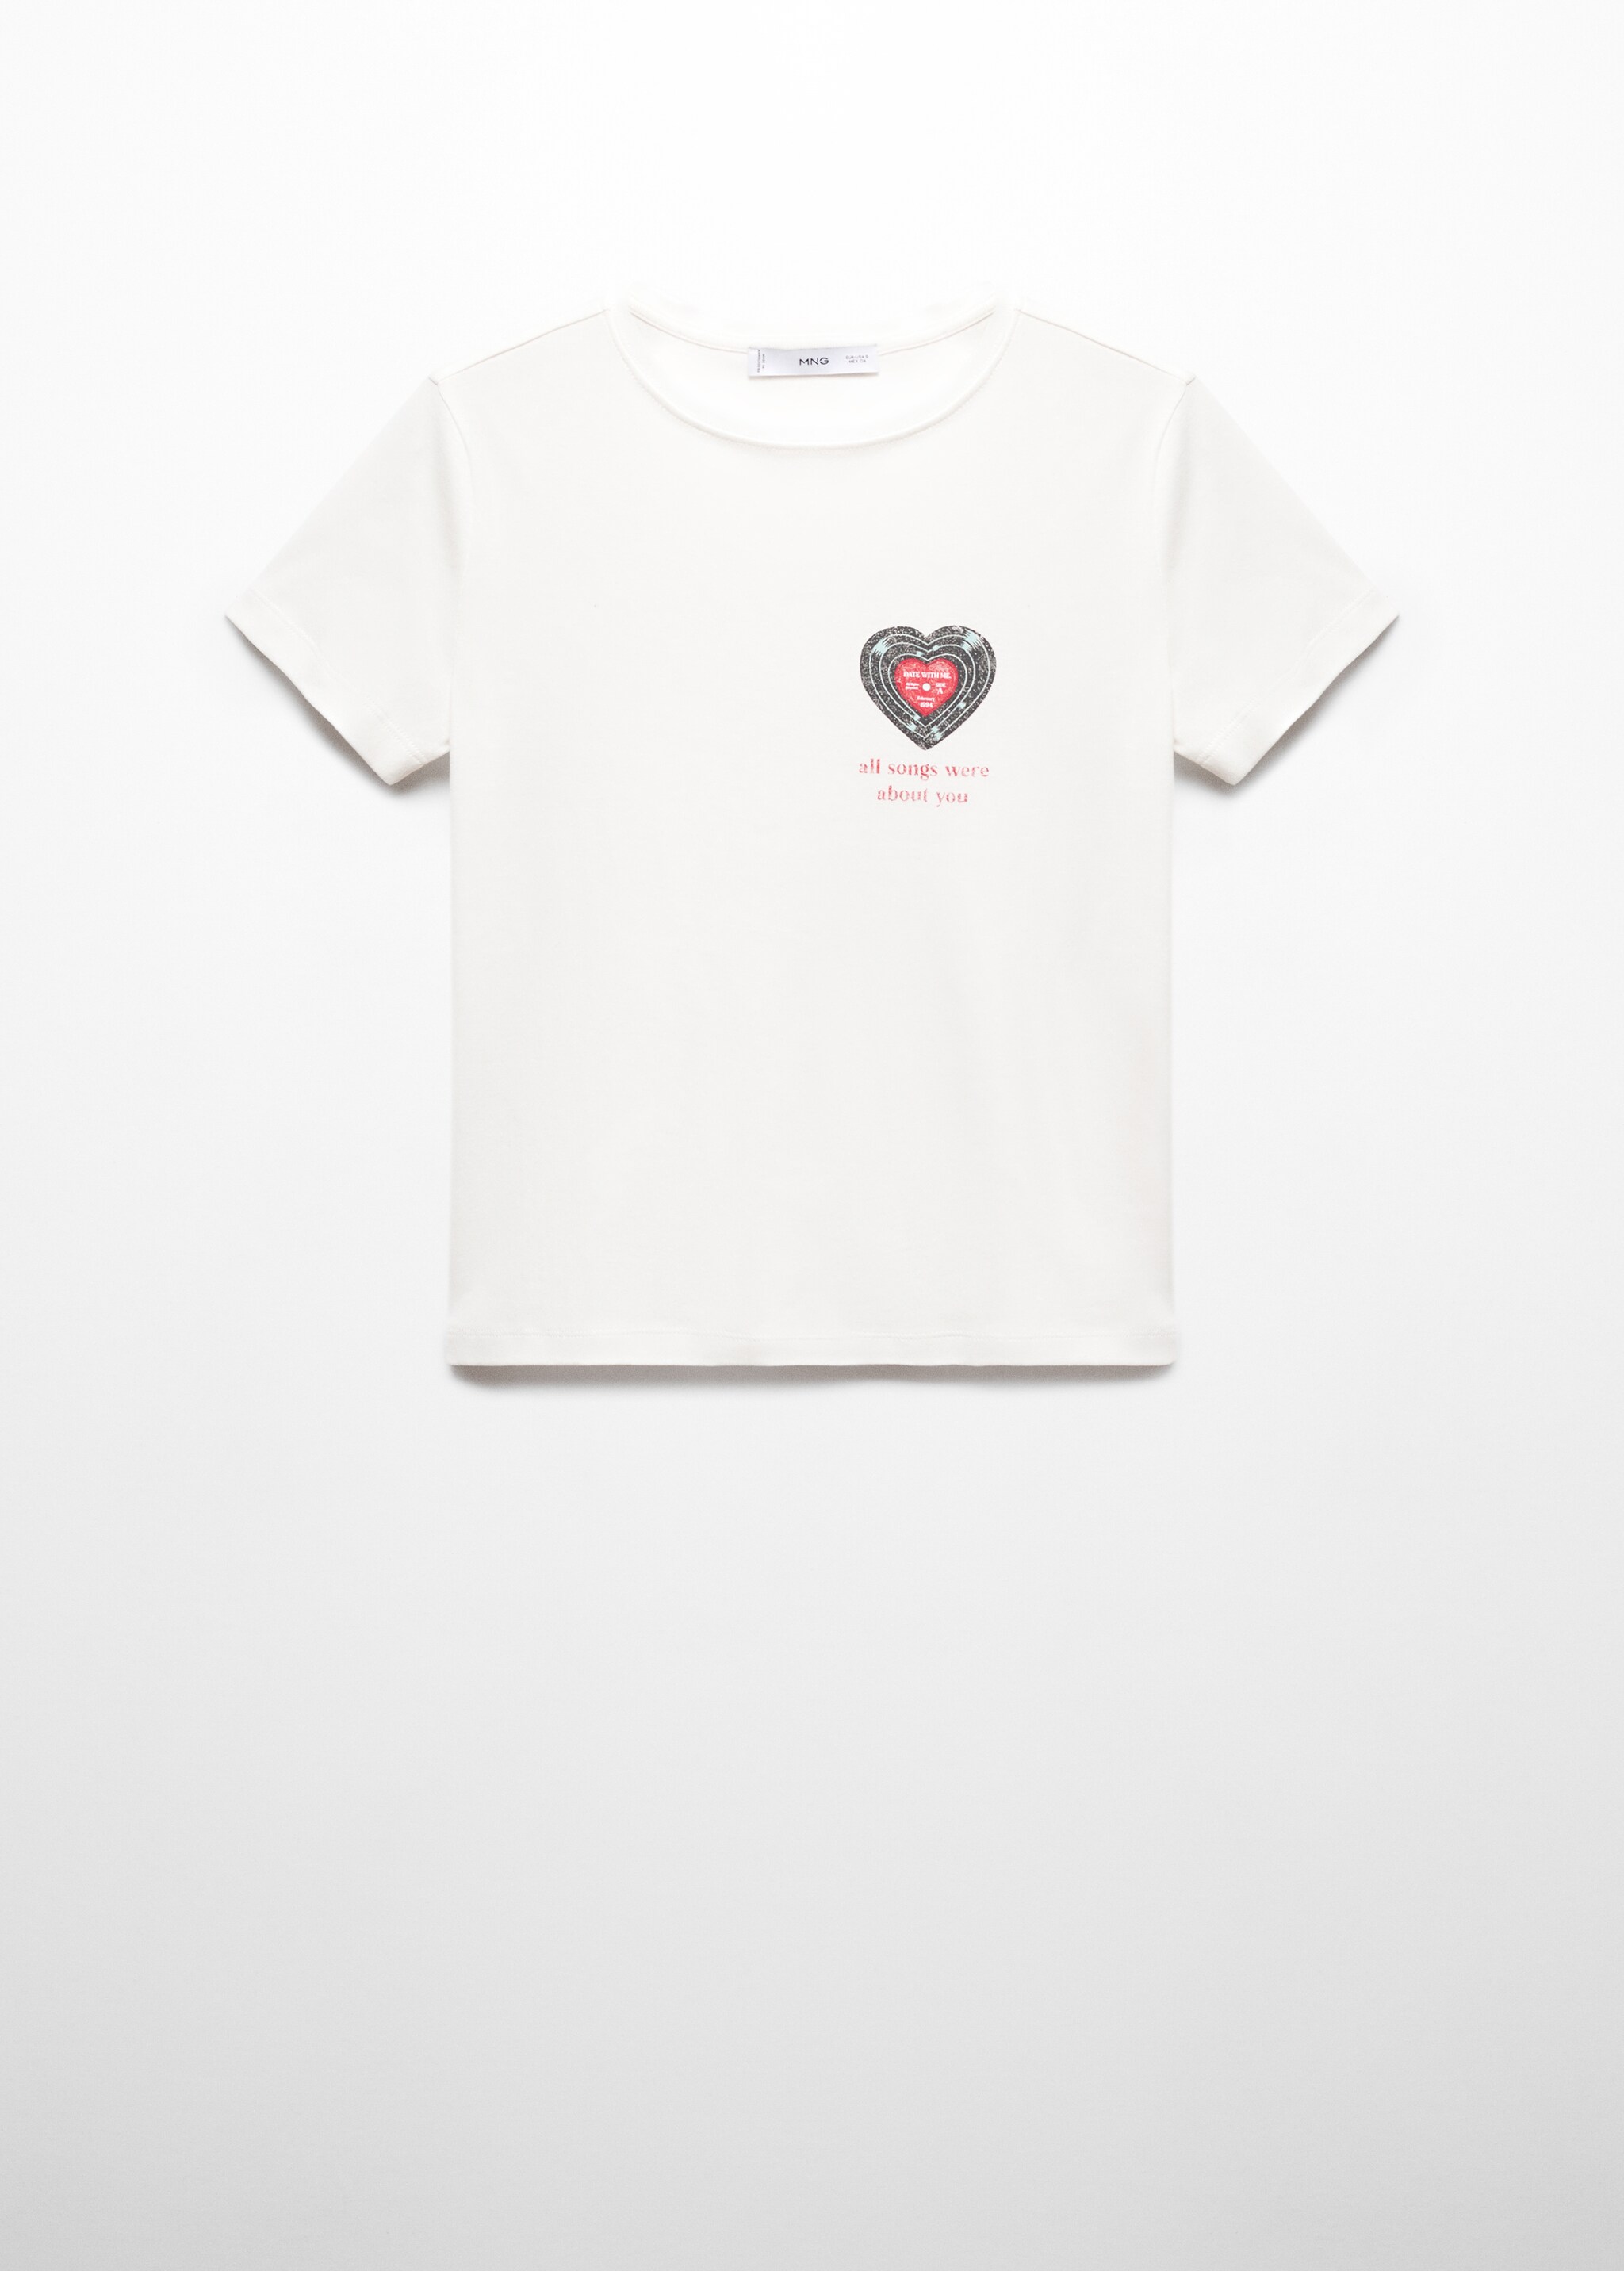 Camiseta algodón mensaje - Artículo sin modelo